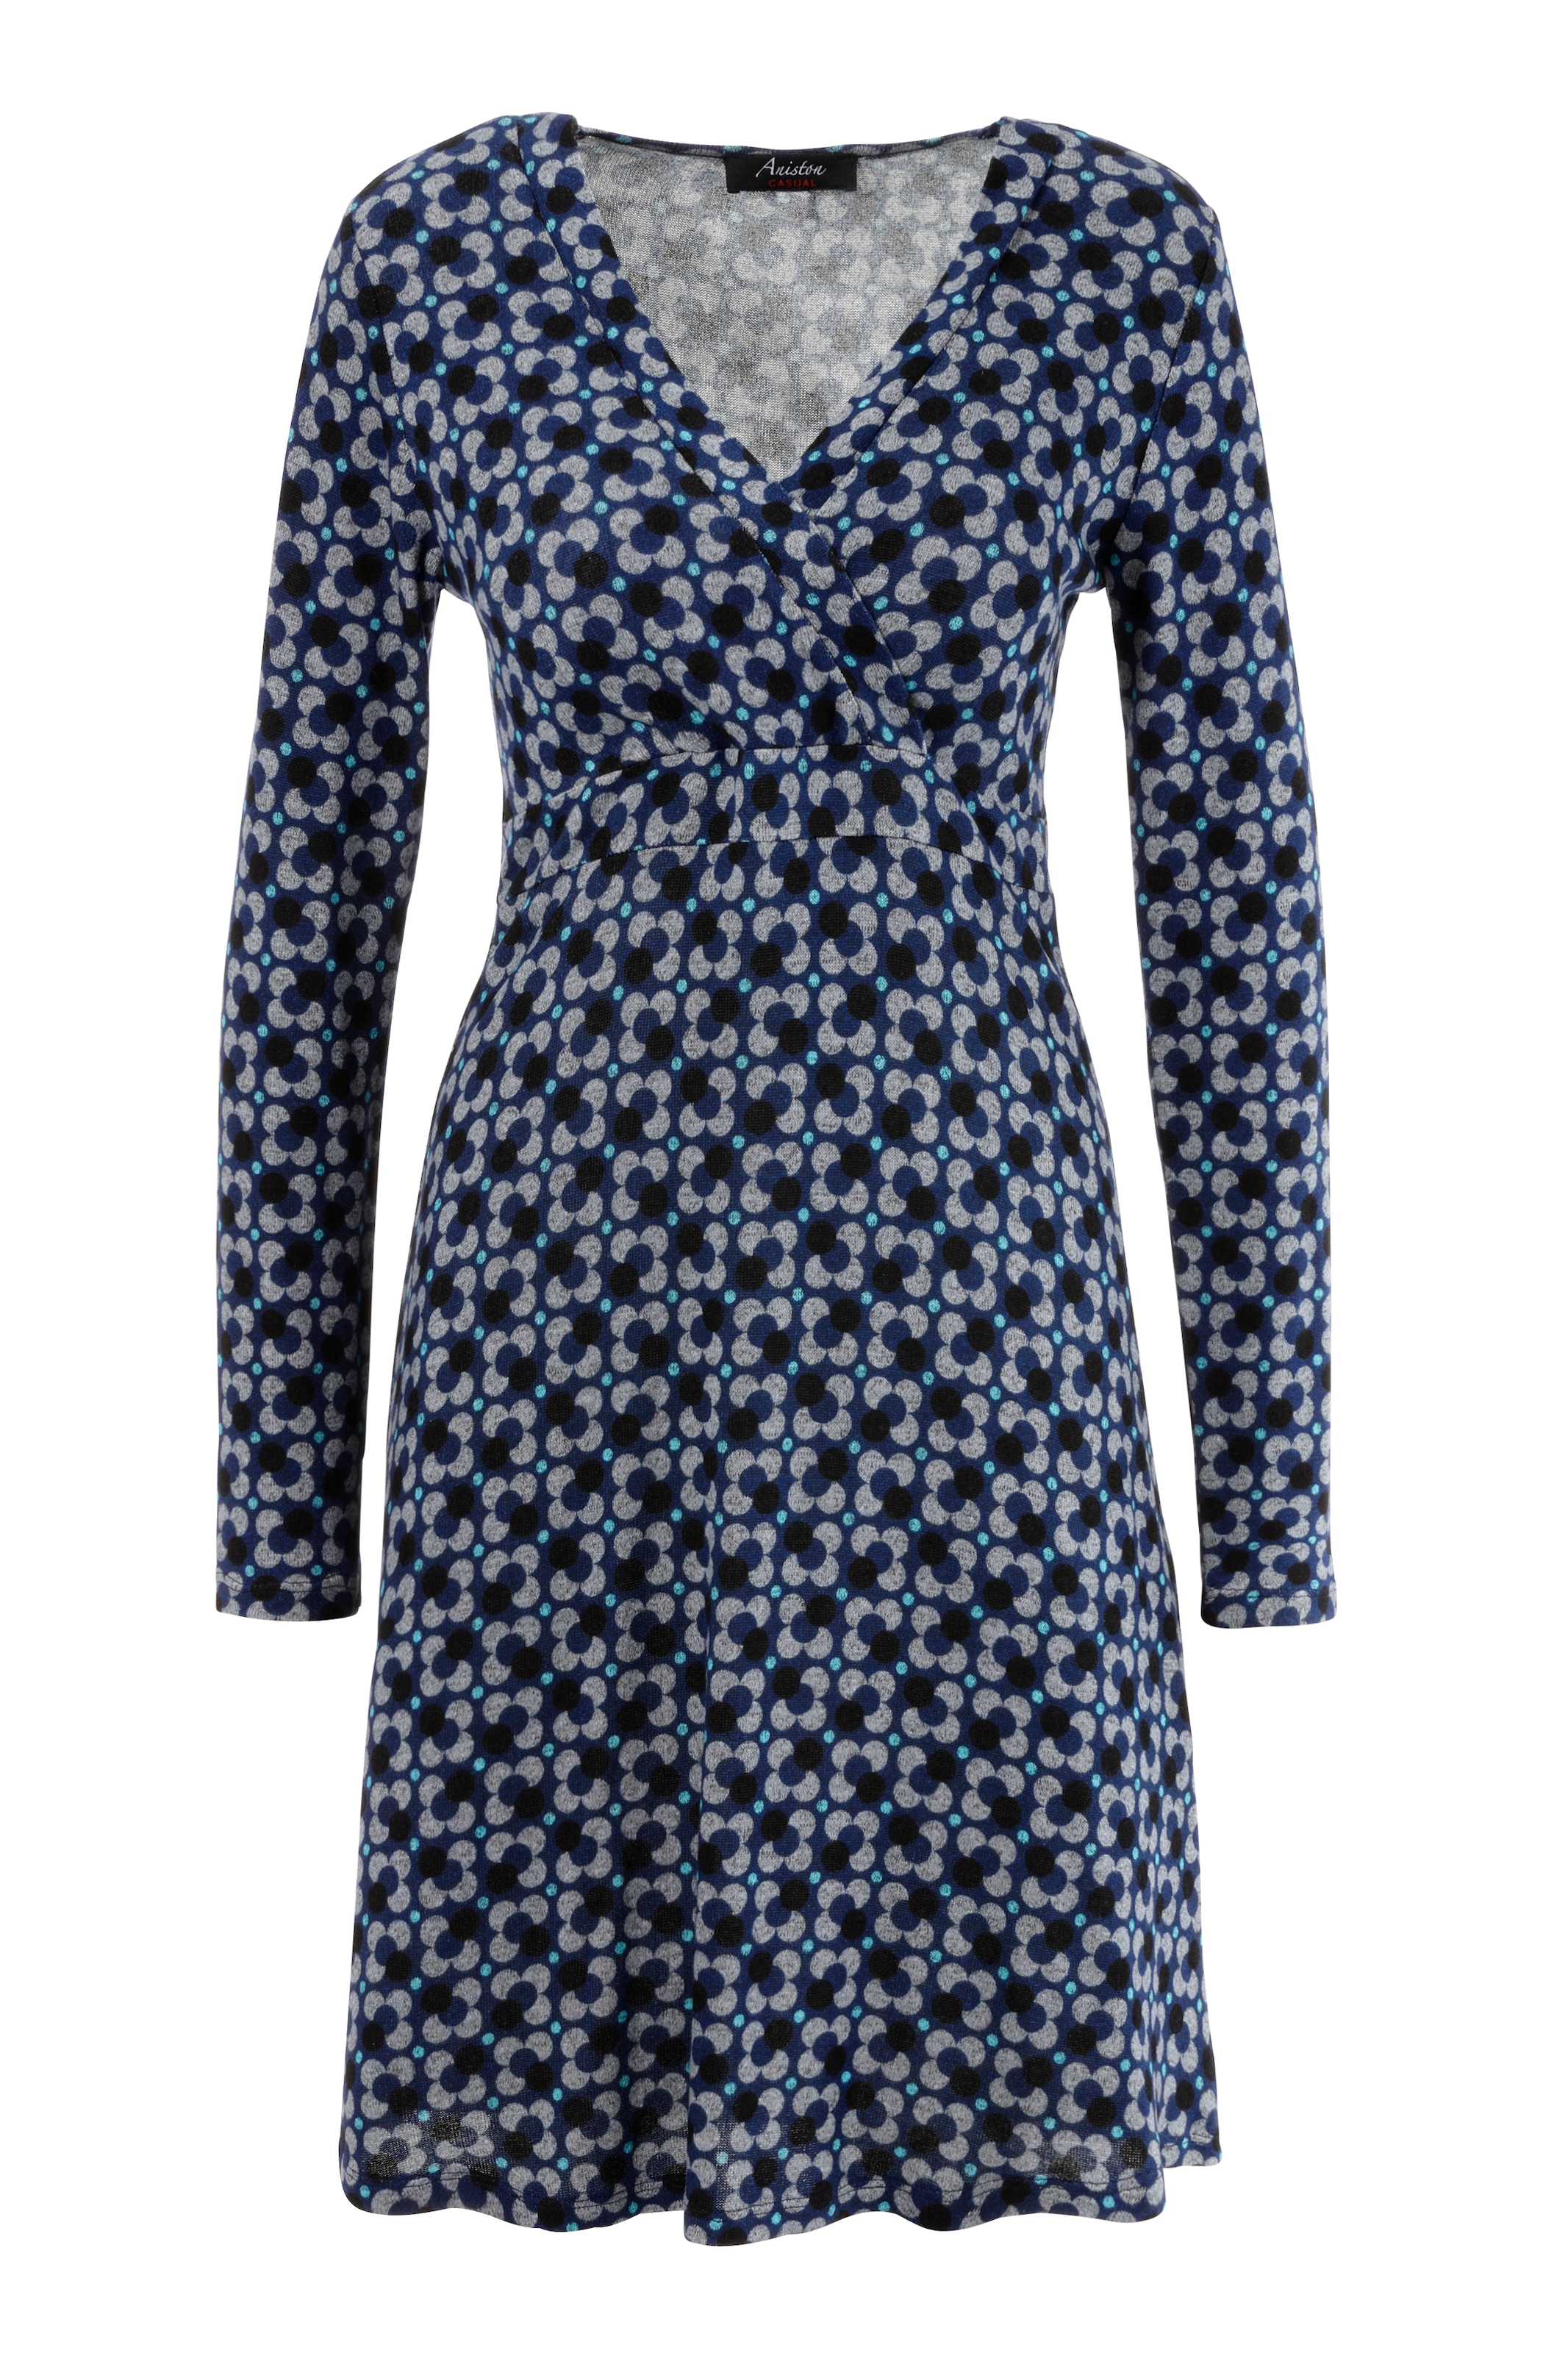 CASUAL mit | KOLLEKTION für BAUR Aniston kaufen Jerseykleid, - in Wickeloptik V-Ausschnitt NEUE